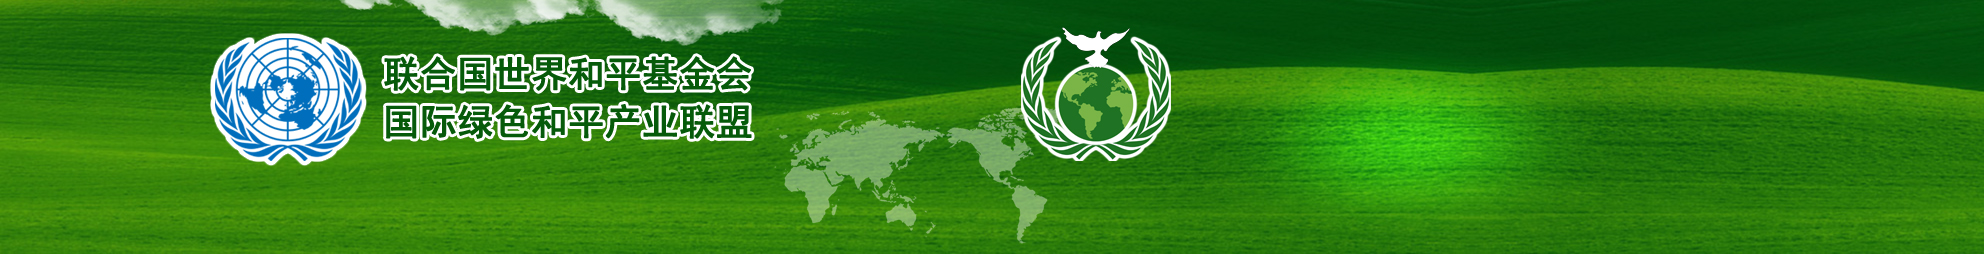 联合国国际和平基金会绿色国际和平产业联盟